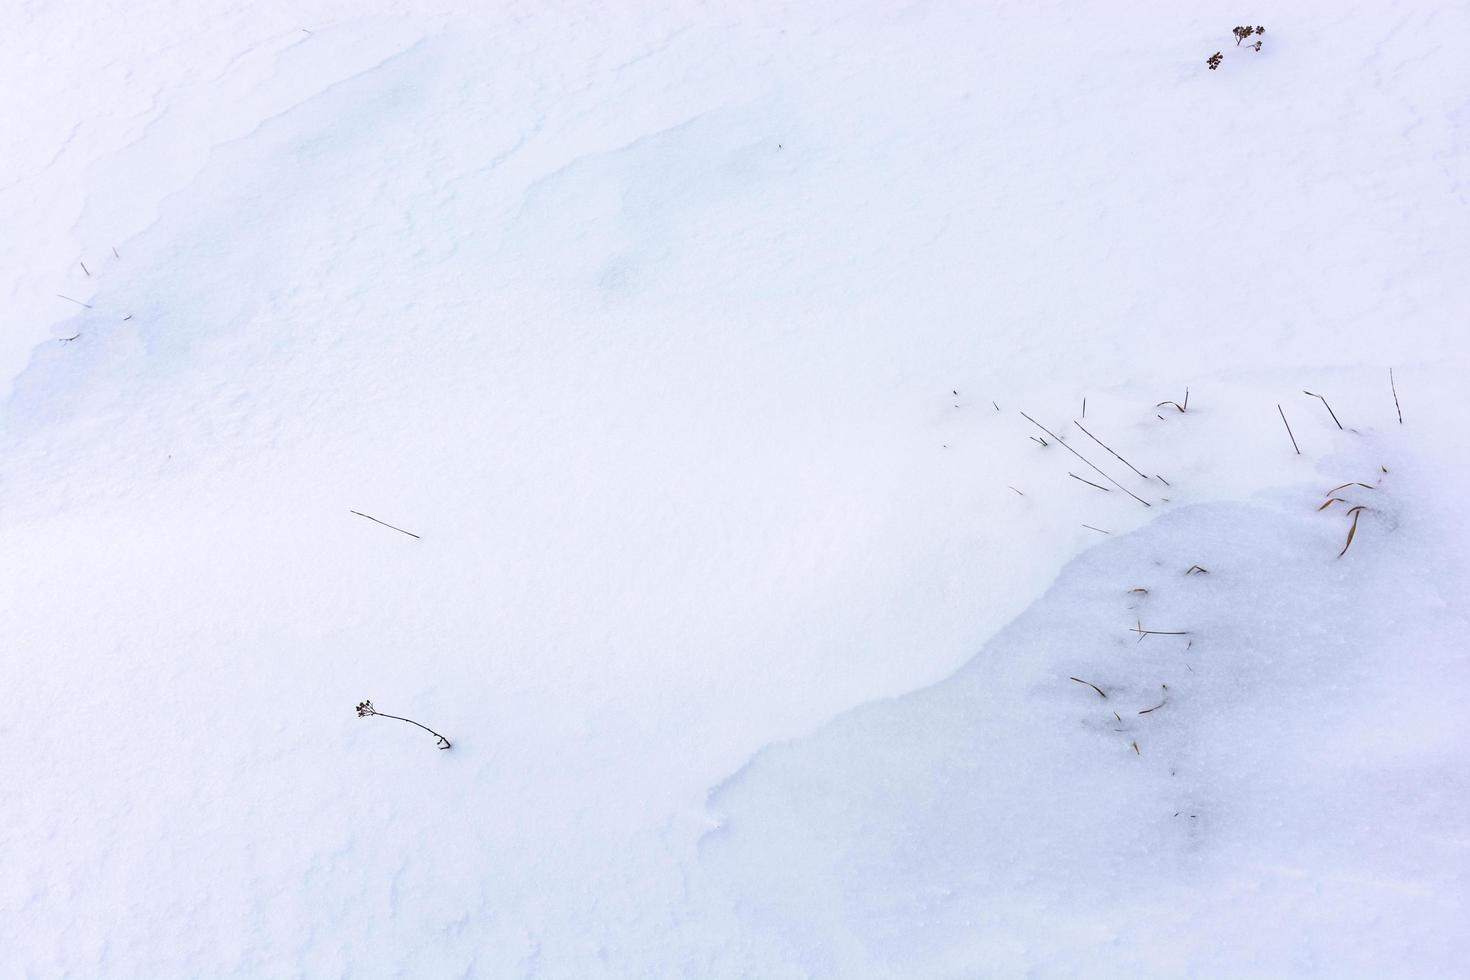 fondo blanco irregular nevado con hierba seca que se muestra en algunos lugares. foto